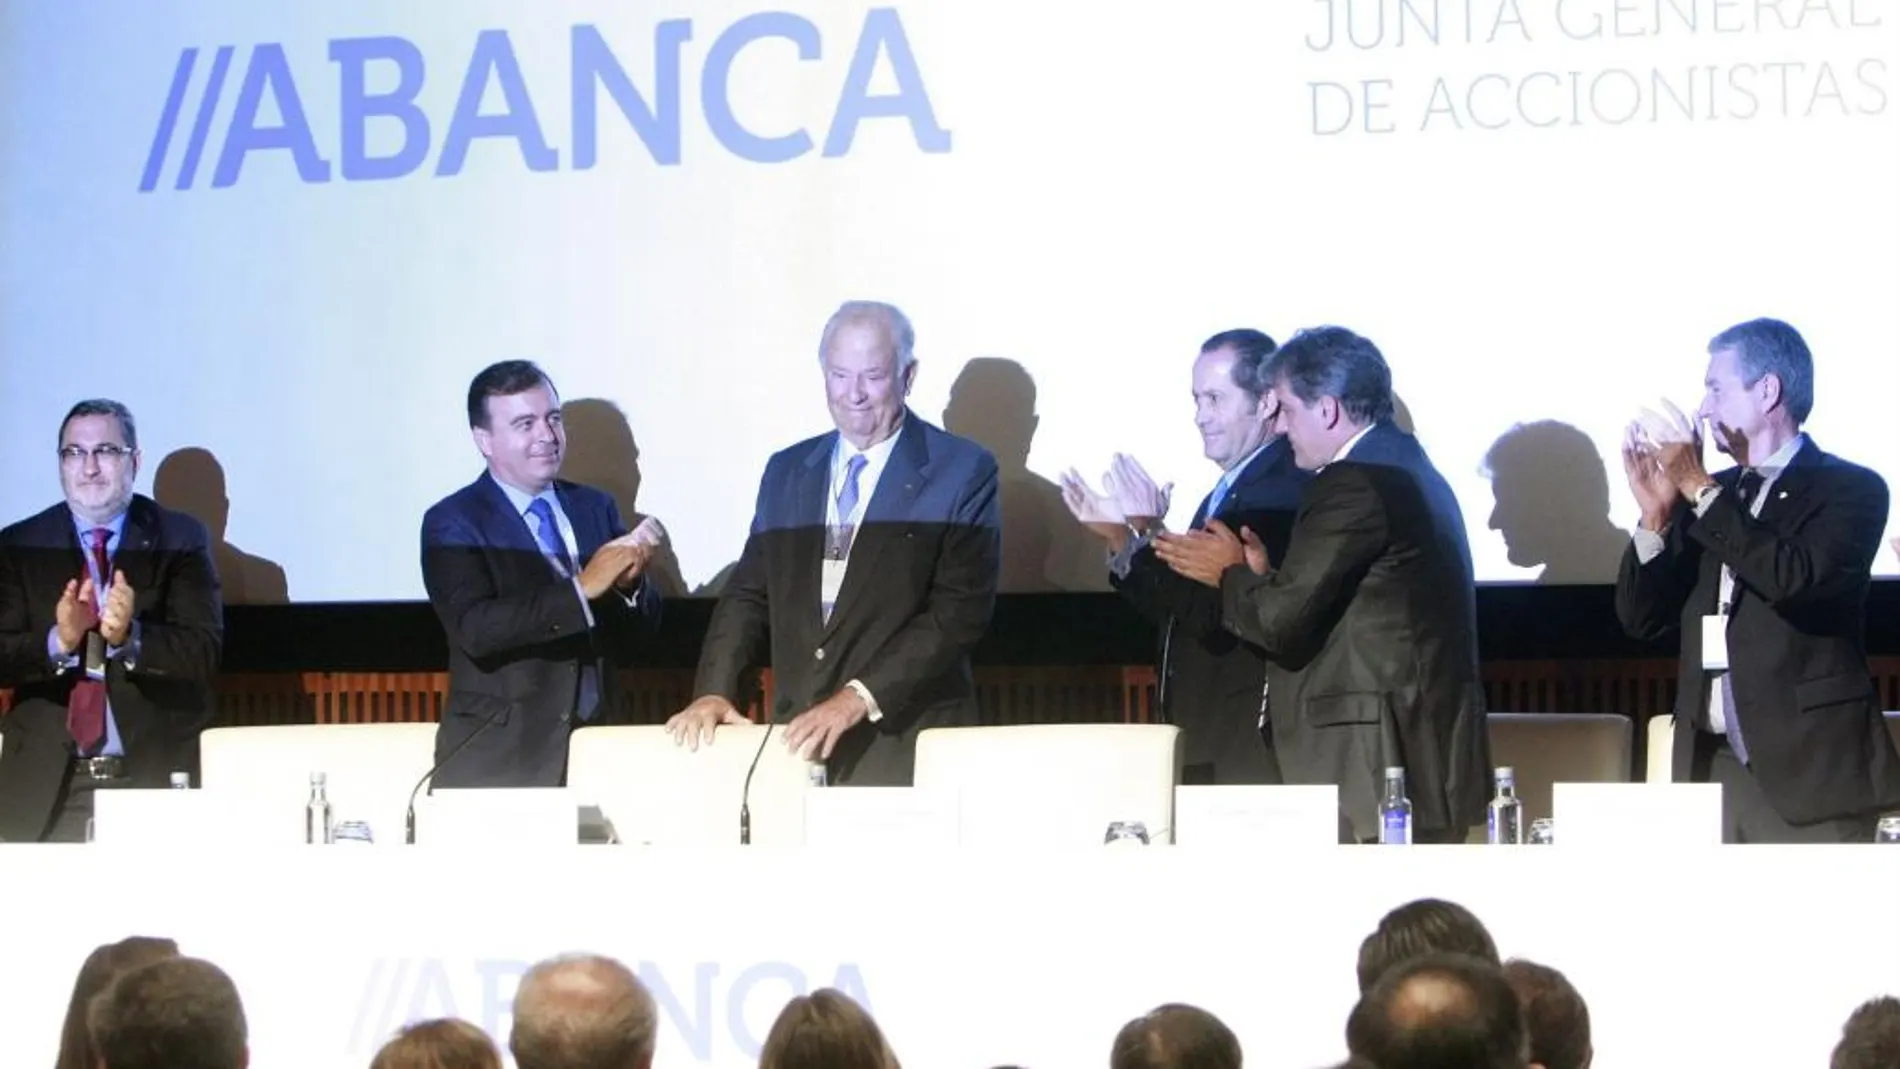 El hasta hoy presidente de Abanca, Javier Echeverría, recibe un aplauso durante la Junta General Extraordinaria de Accionistas